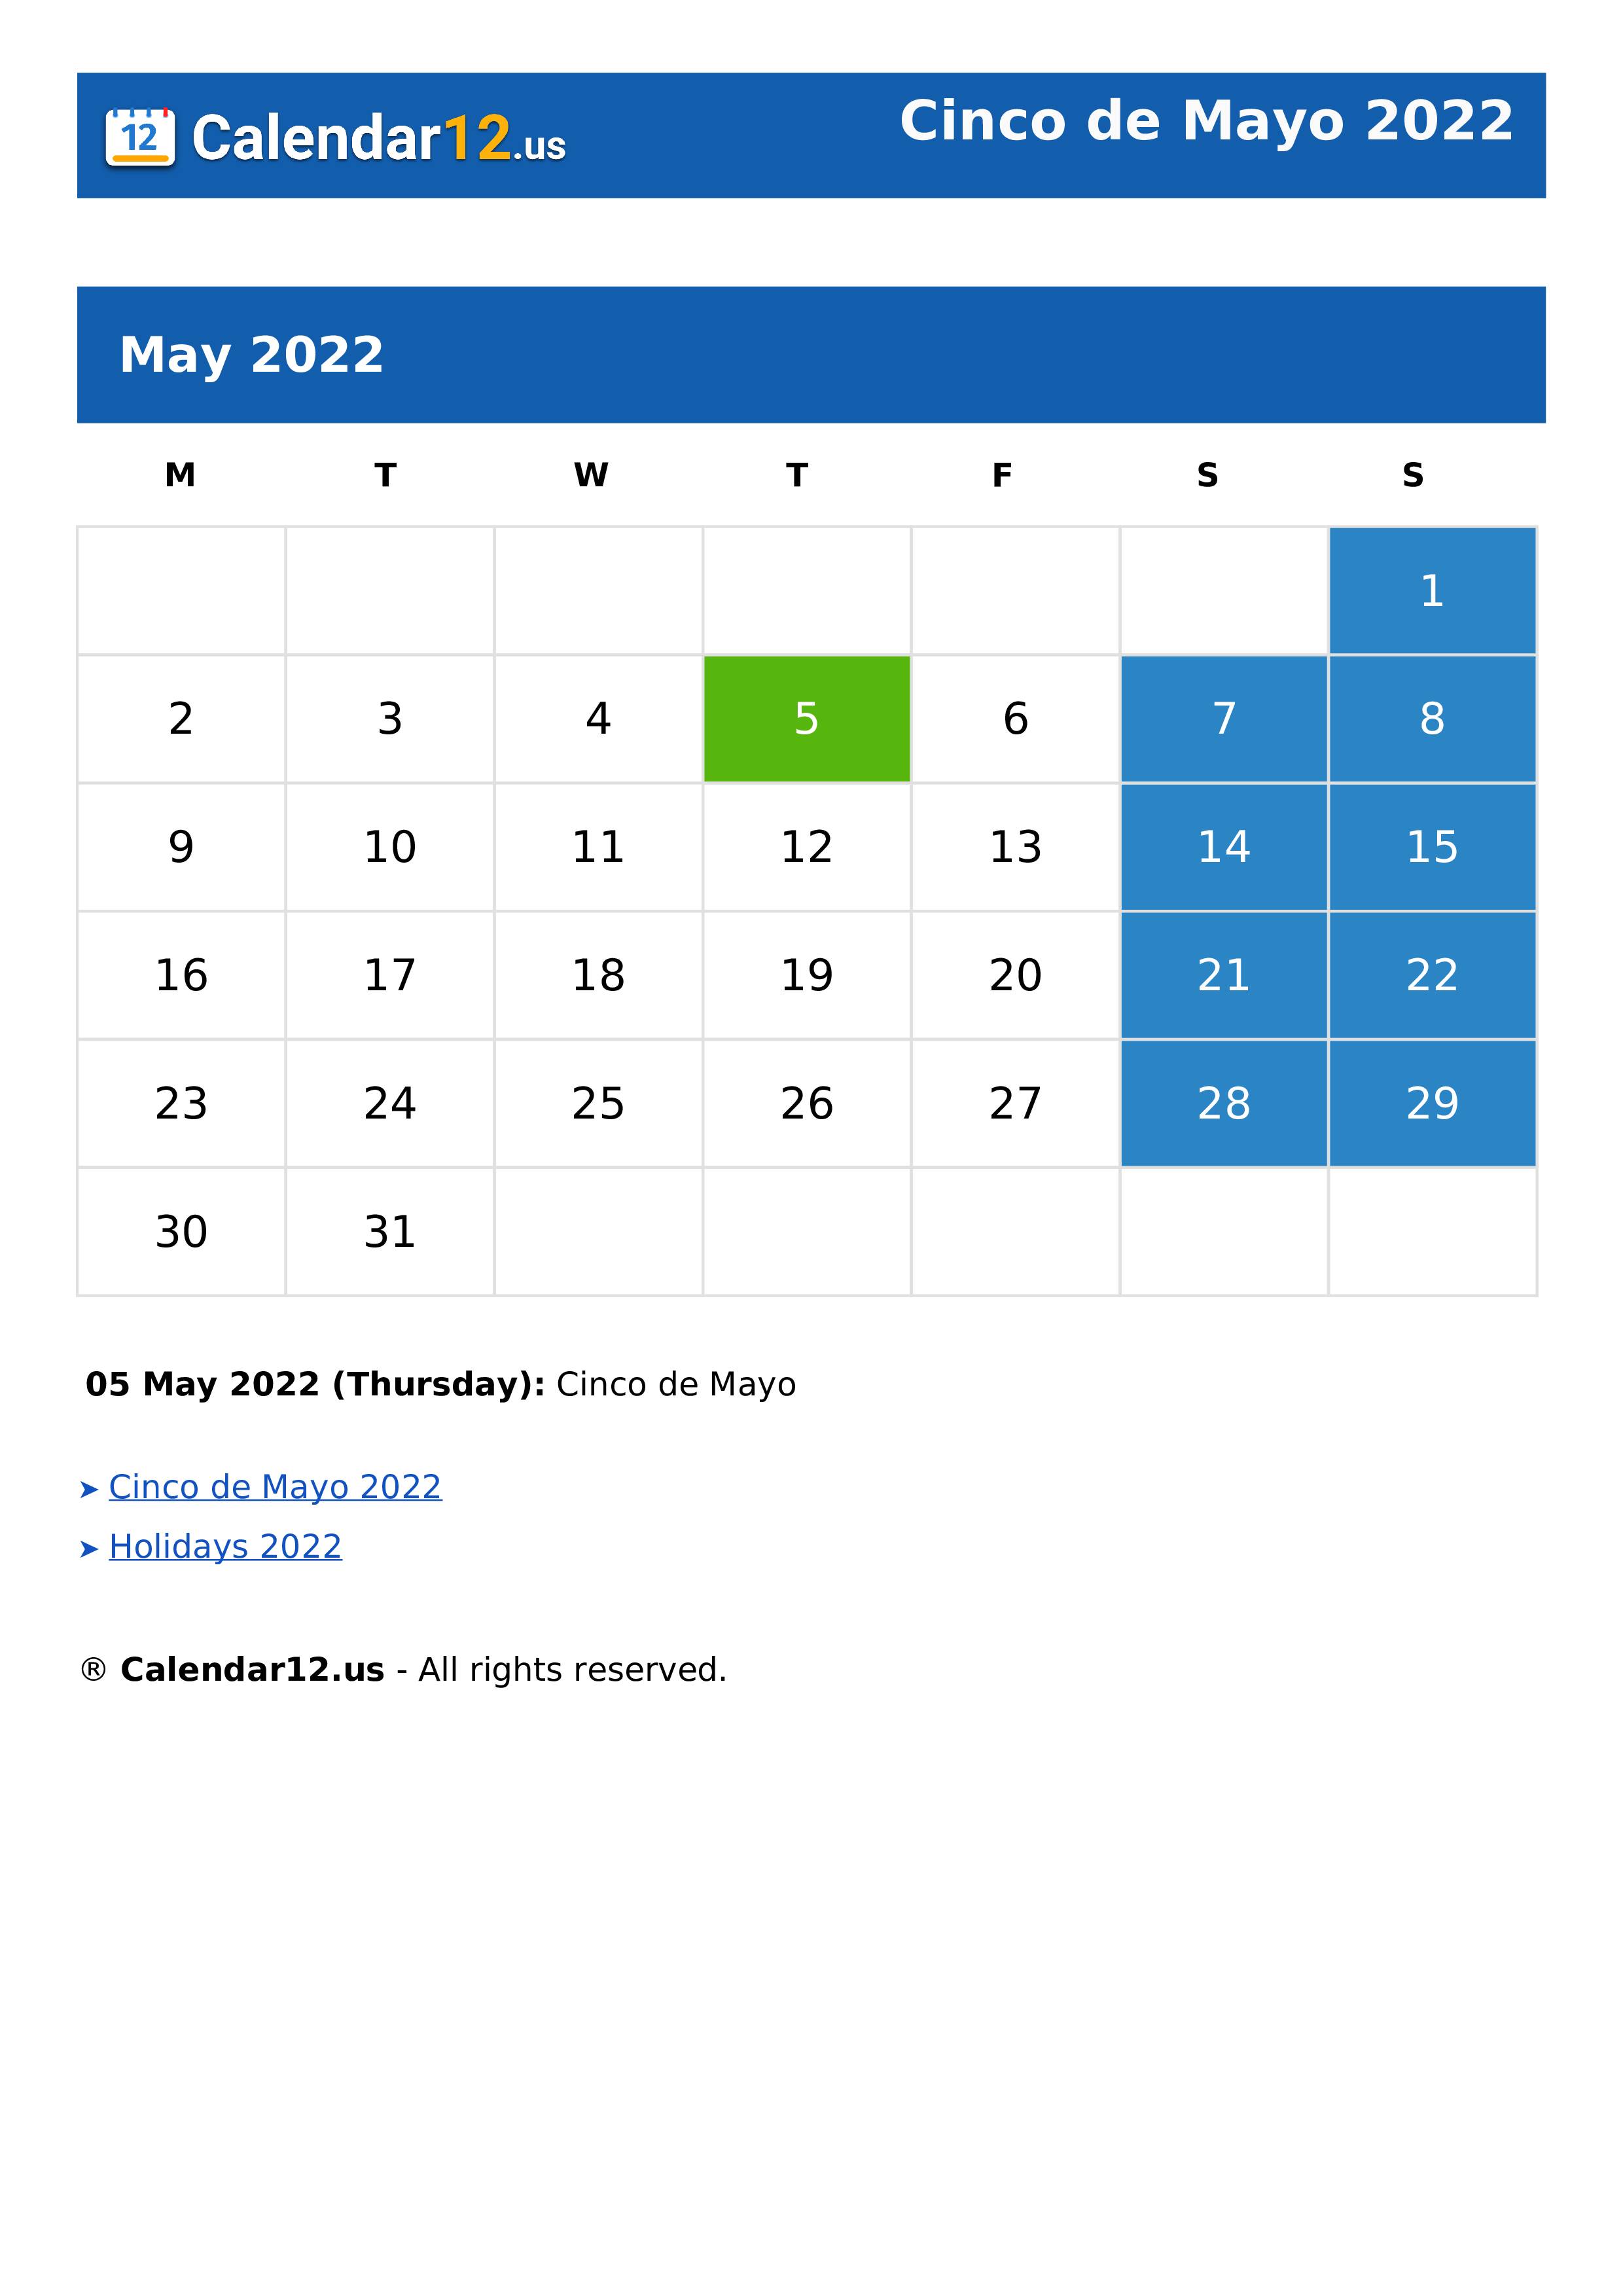 Cinco de Mayo 2022